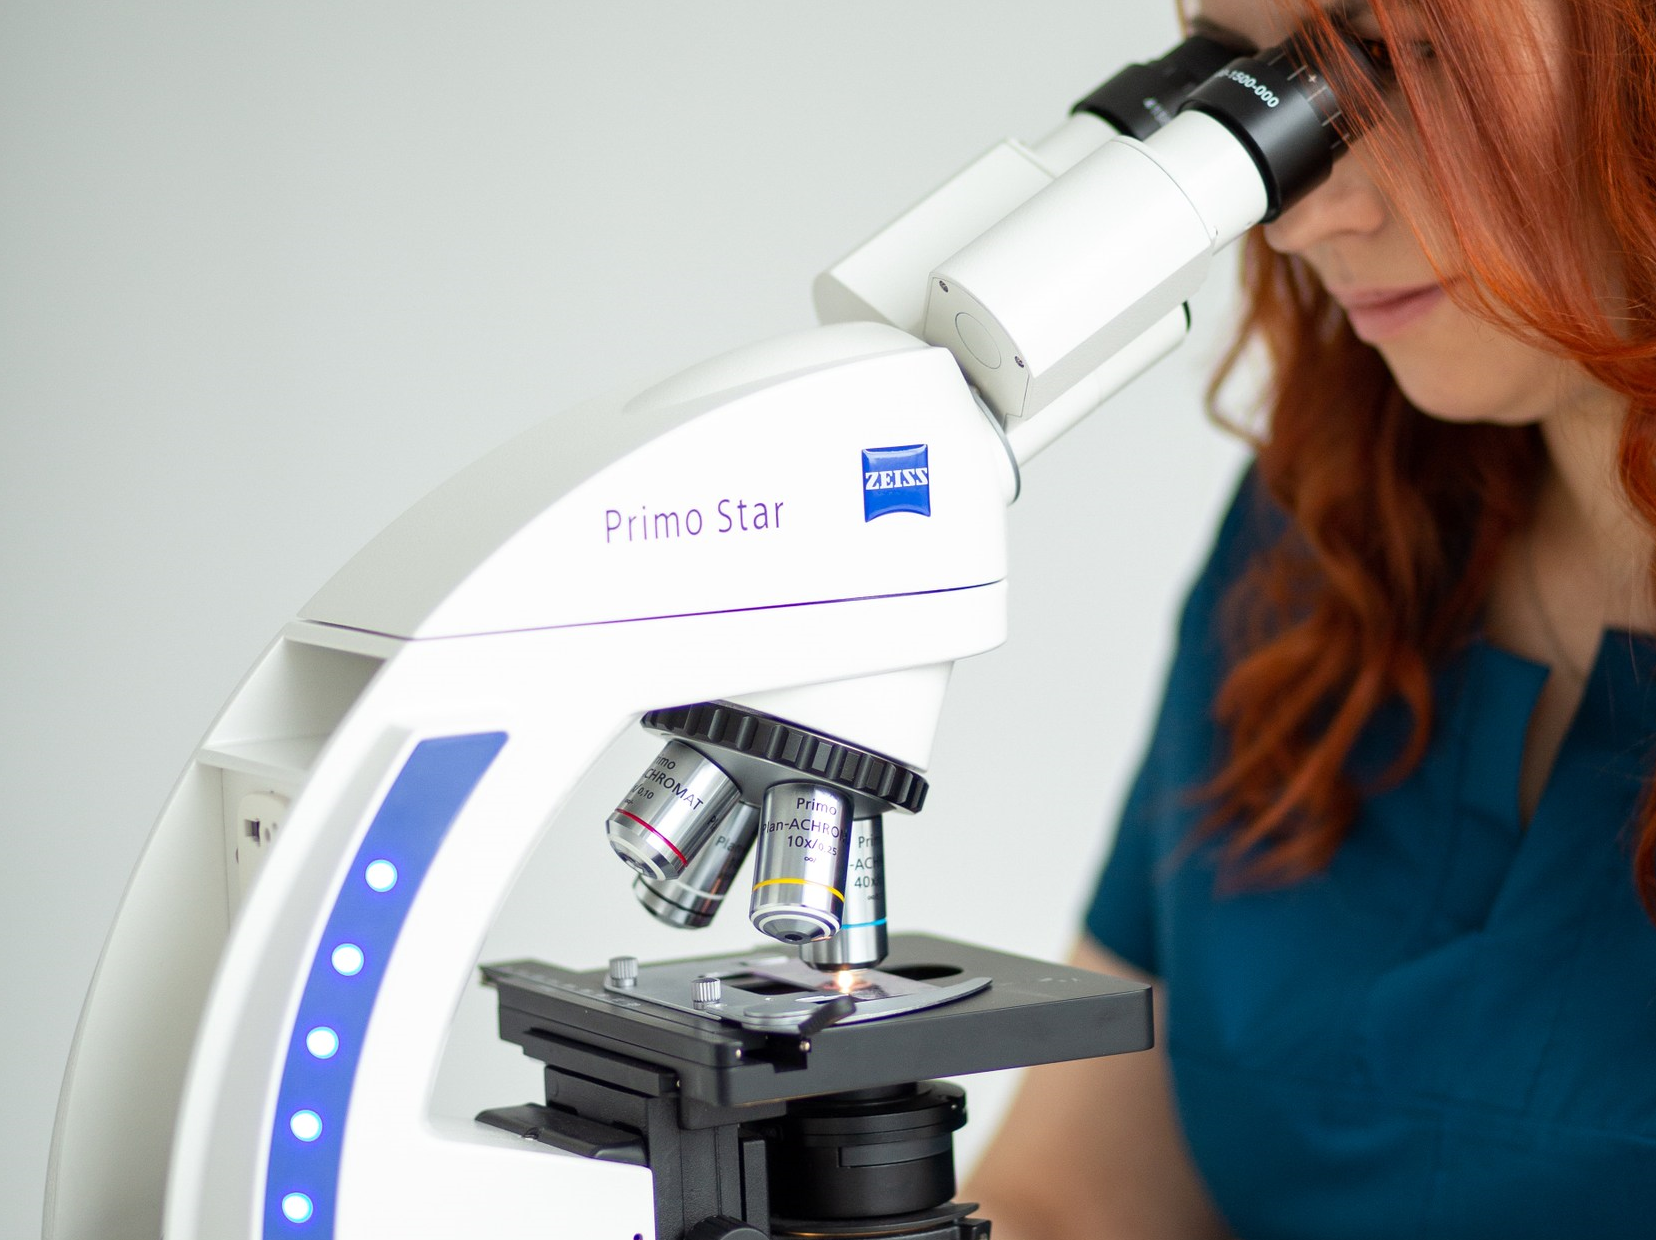 Гистология и методы биопсии: отбор, фиксация и исследование материала